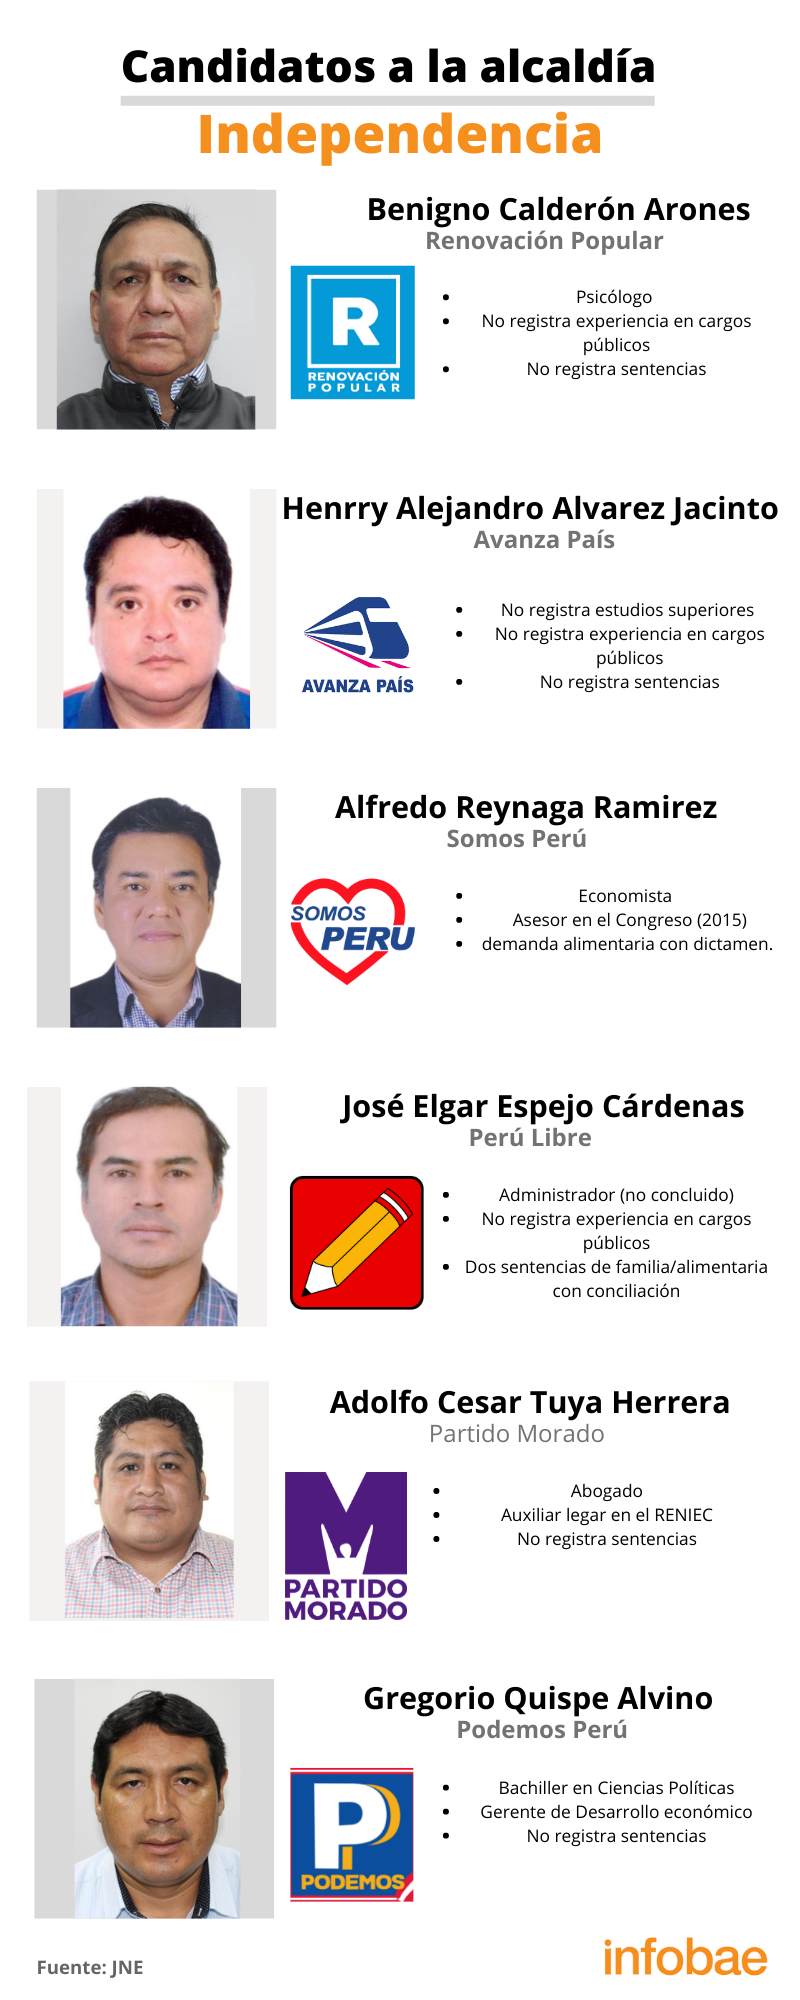 Candidatos a la alcaldía del distrito de Independencia